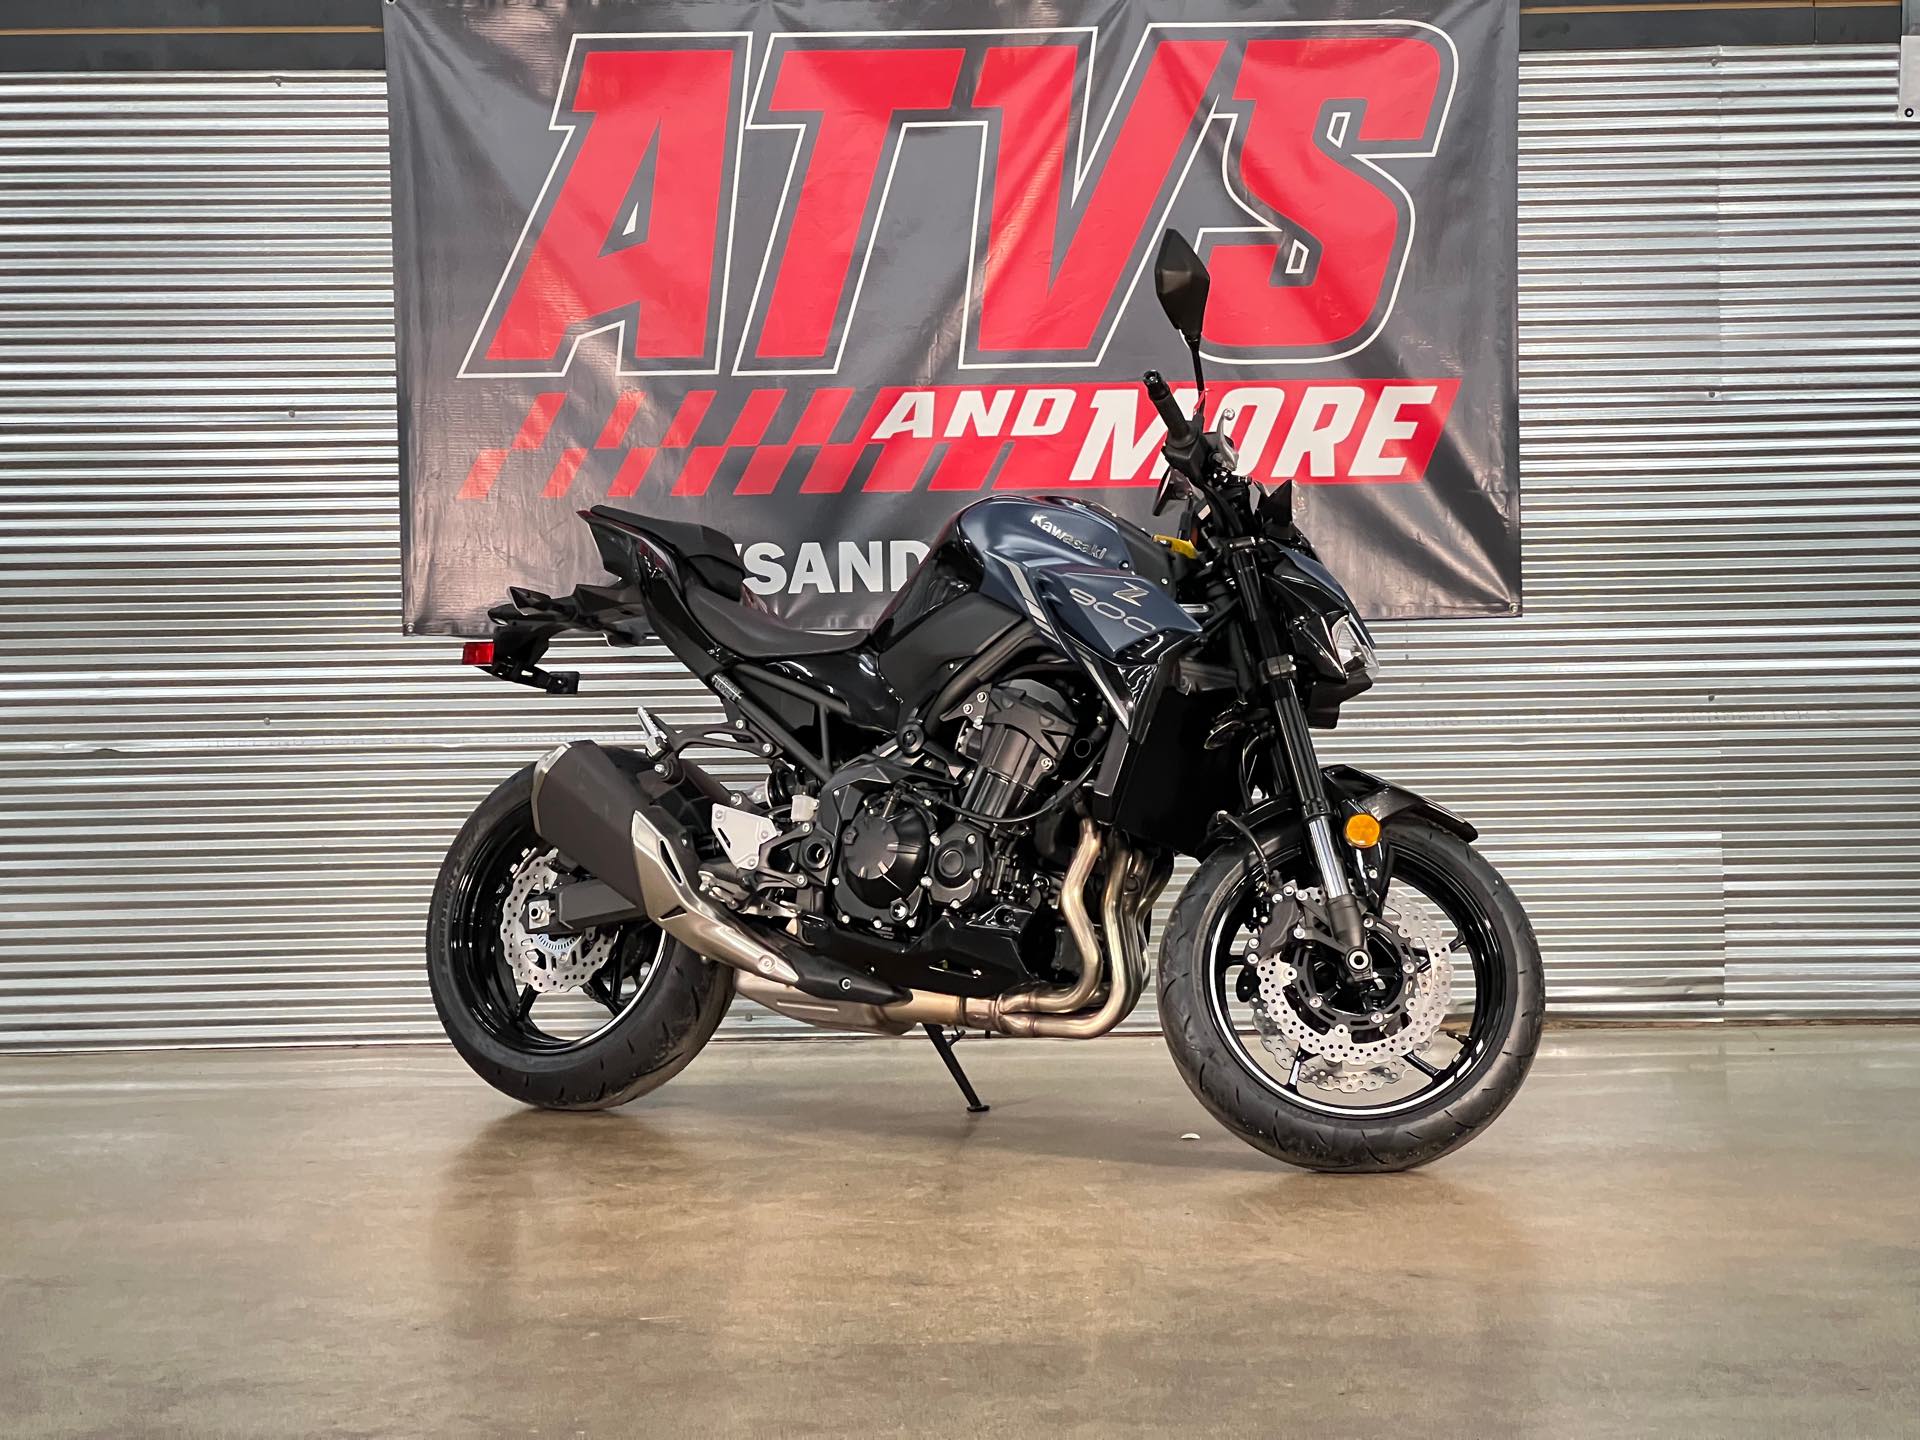 2022 Kawasaki Z900 ABS at ATVs and More